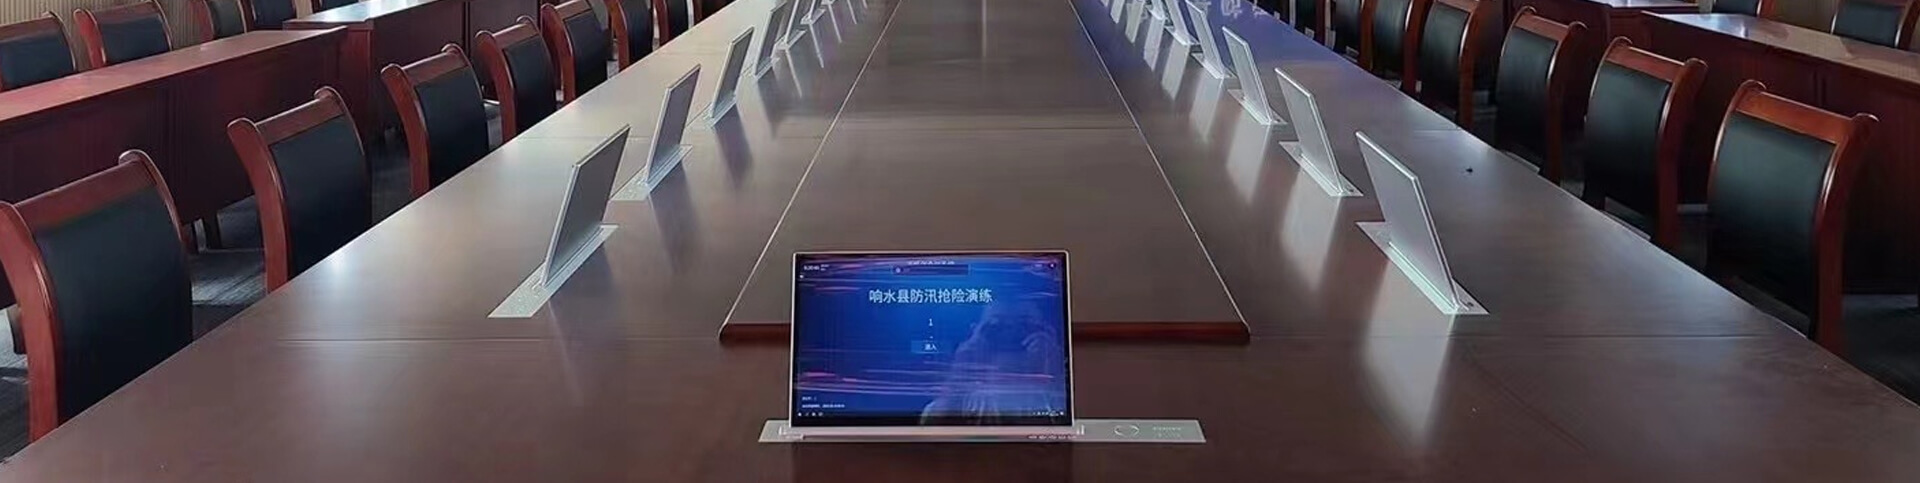 Sistema de conferencia sin papel para meteorología de China en Jiangsu